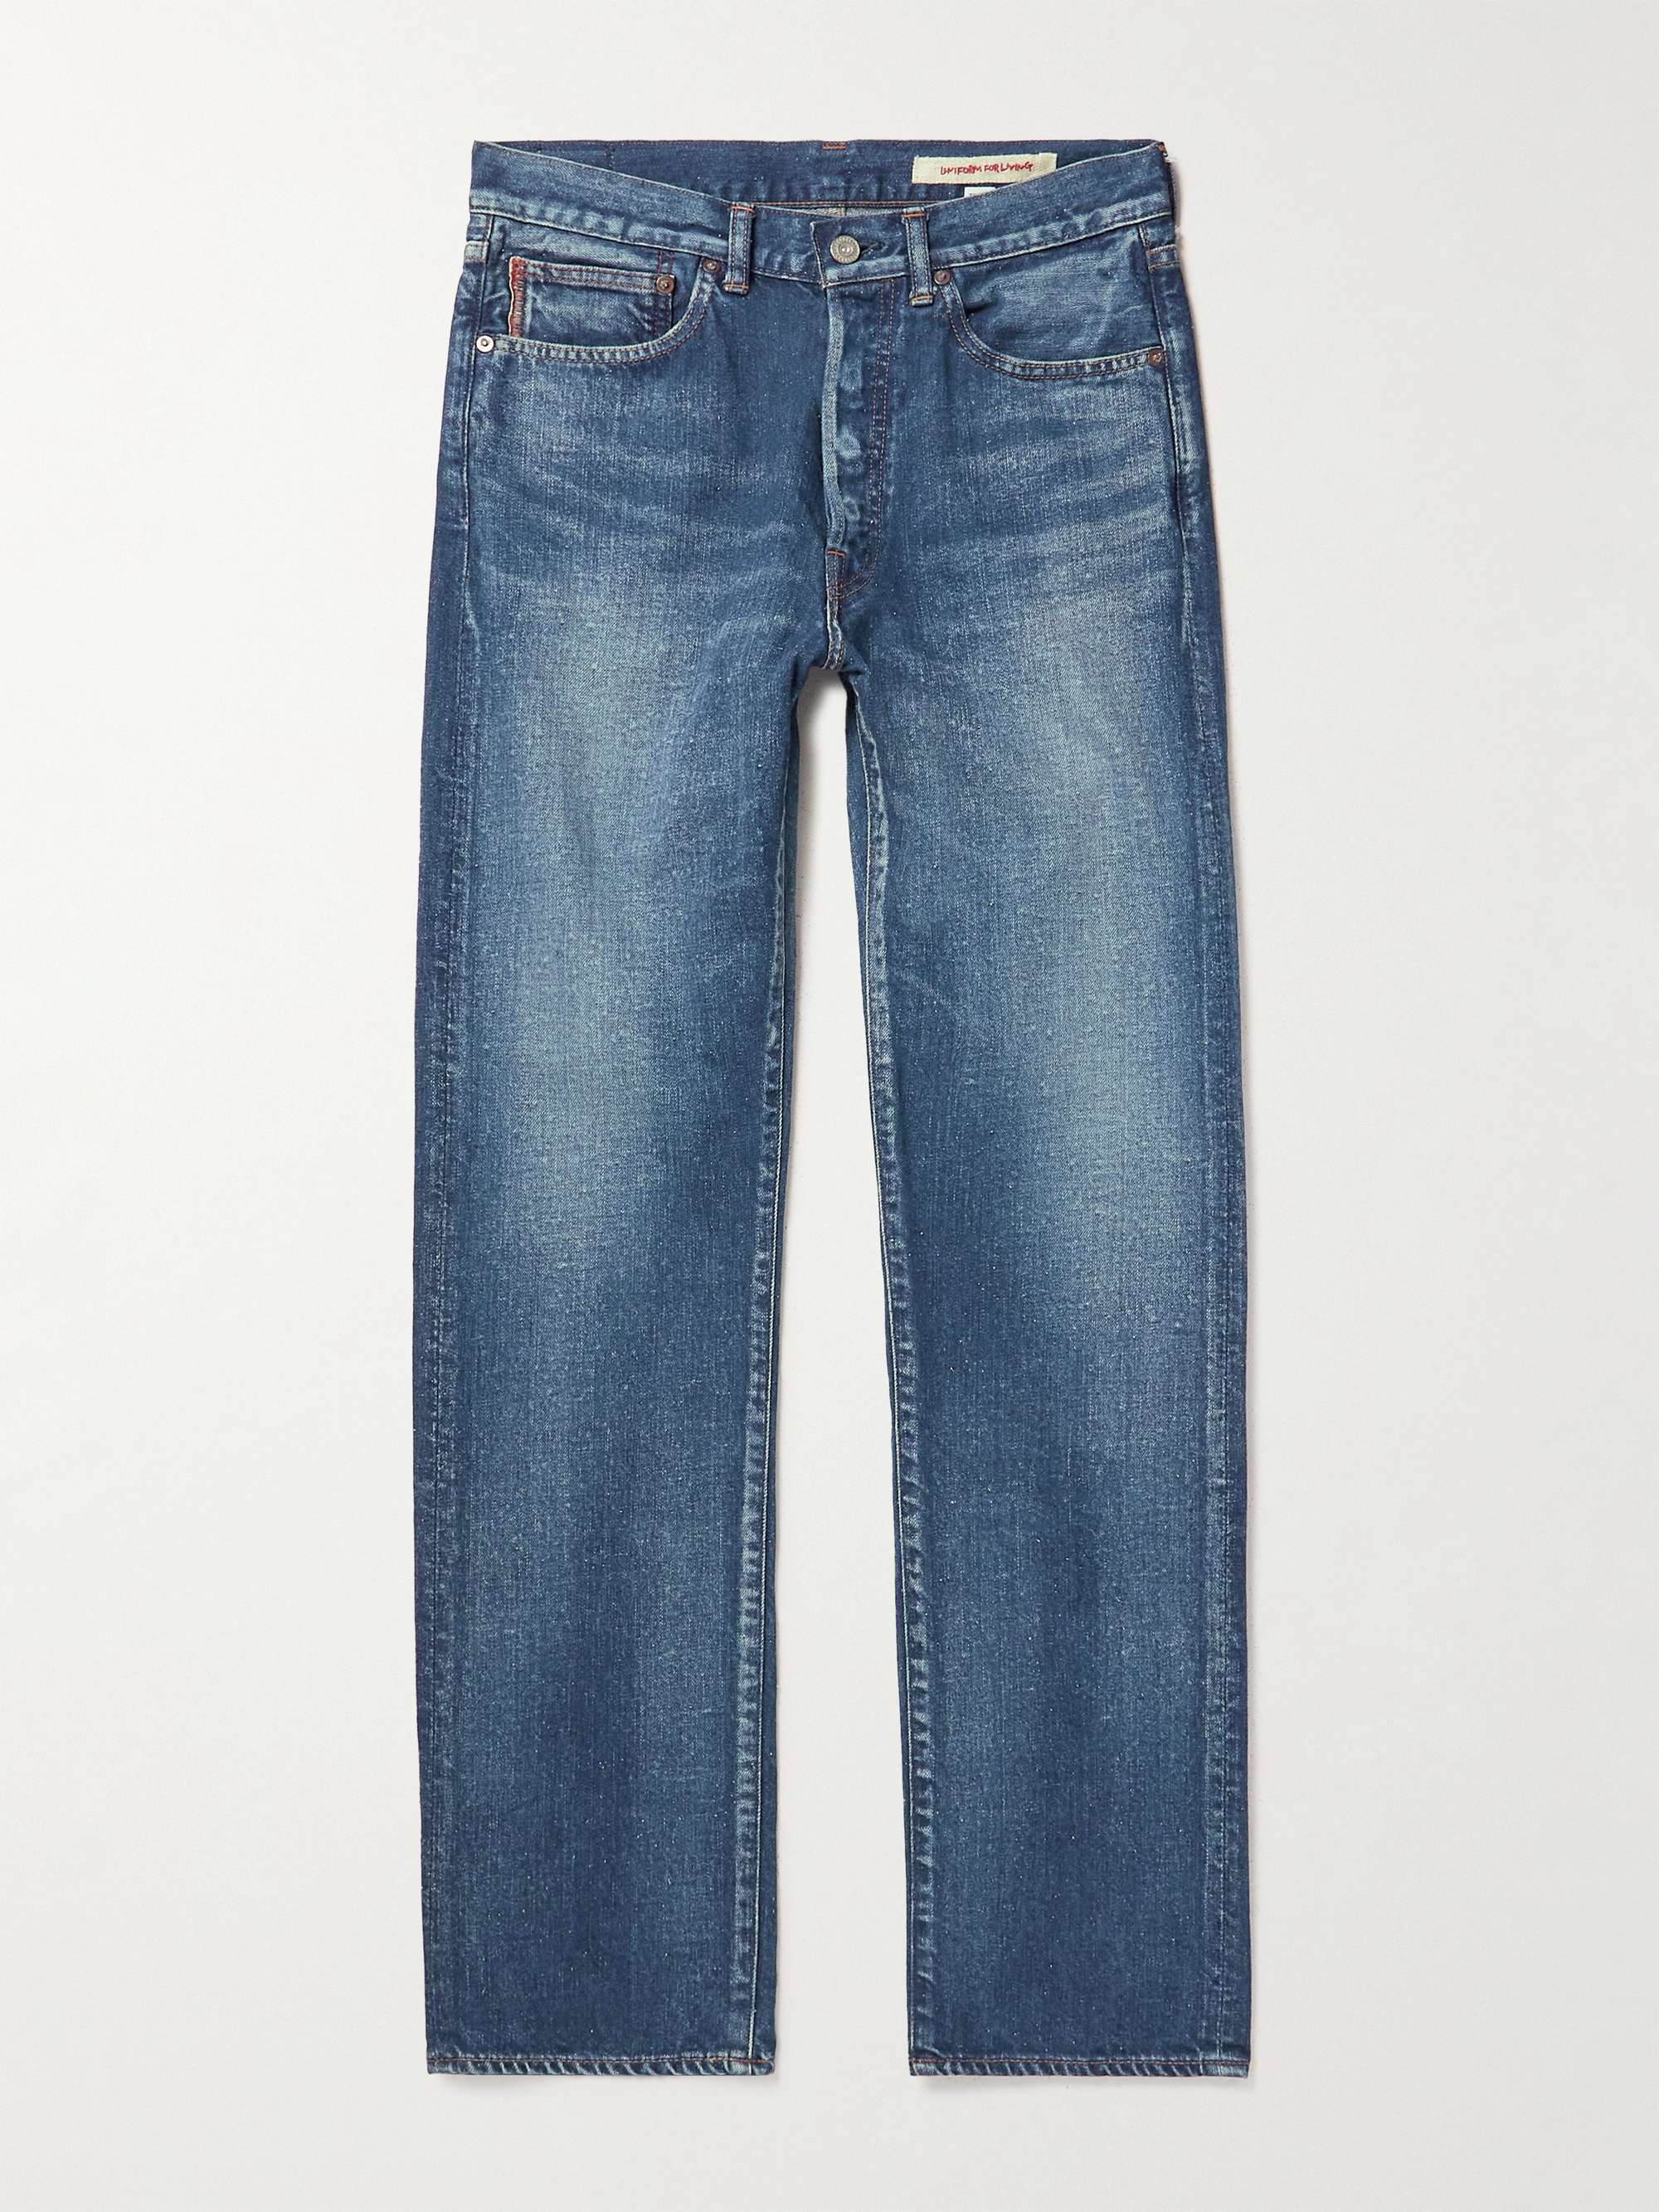 COTTLE Straight-Leg Selvedge Jeans